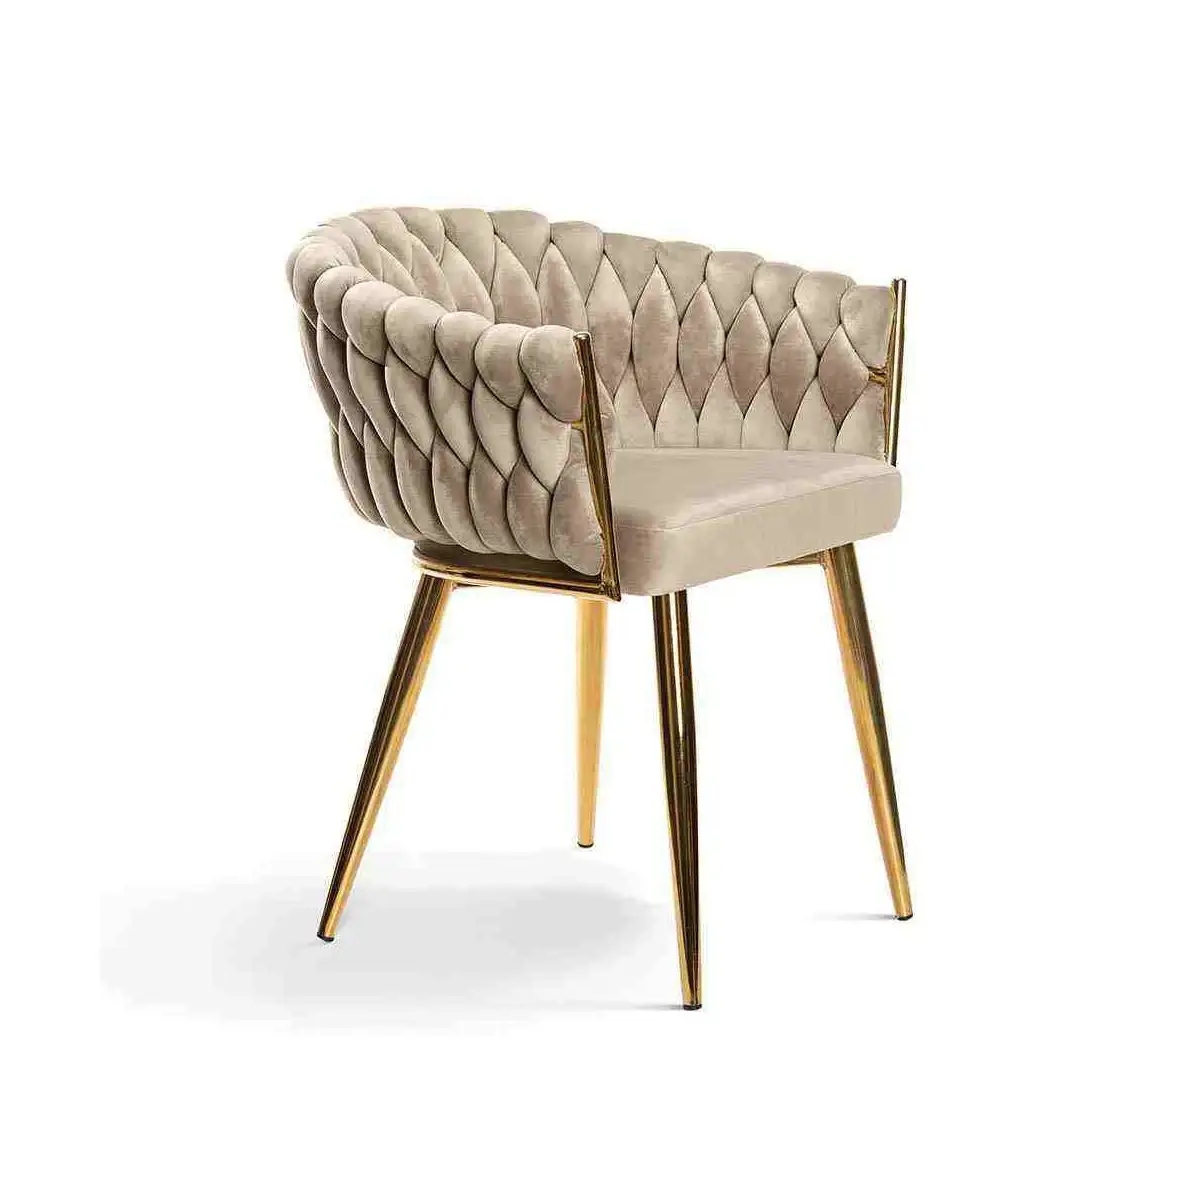 Canapé simple de loisir moderne Chaise nordique Canapé à pieds en métal en tissu velours Chaise longue